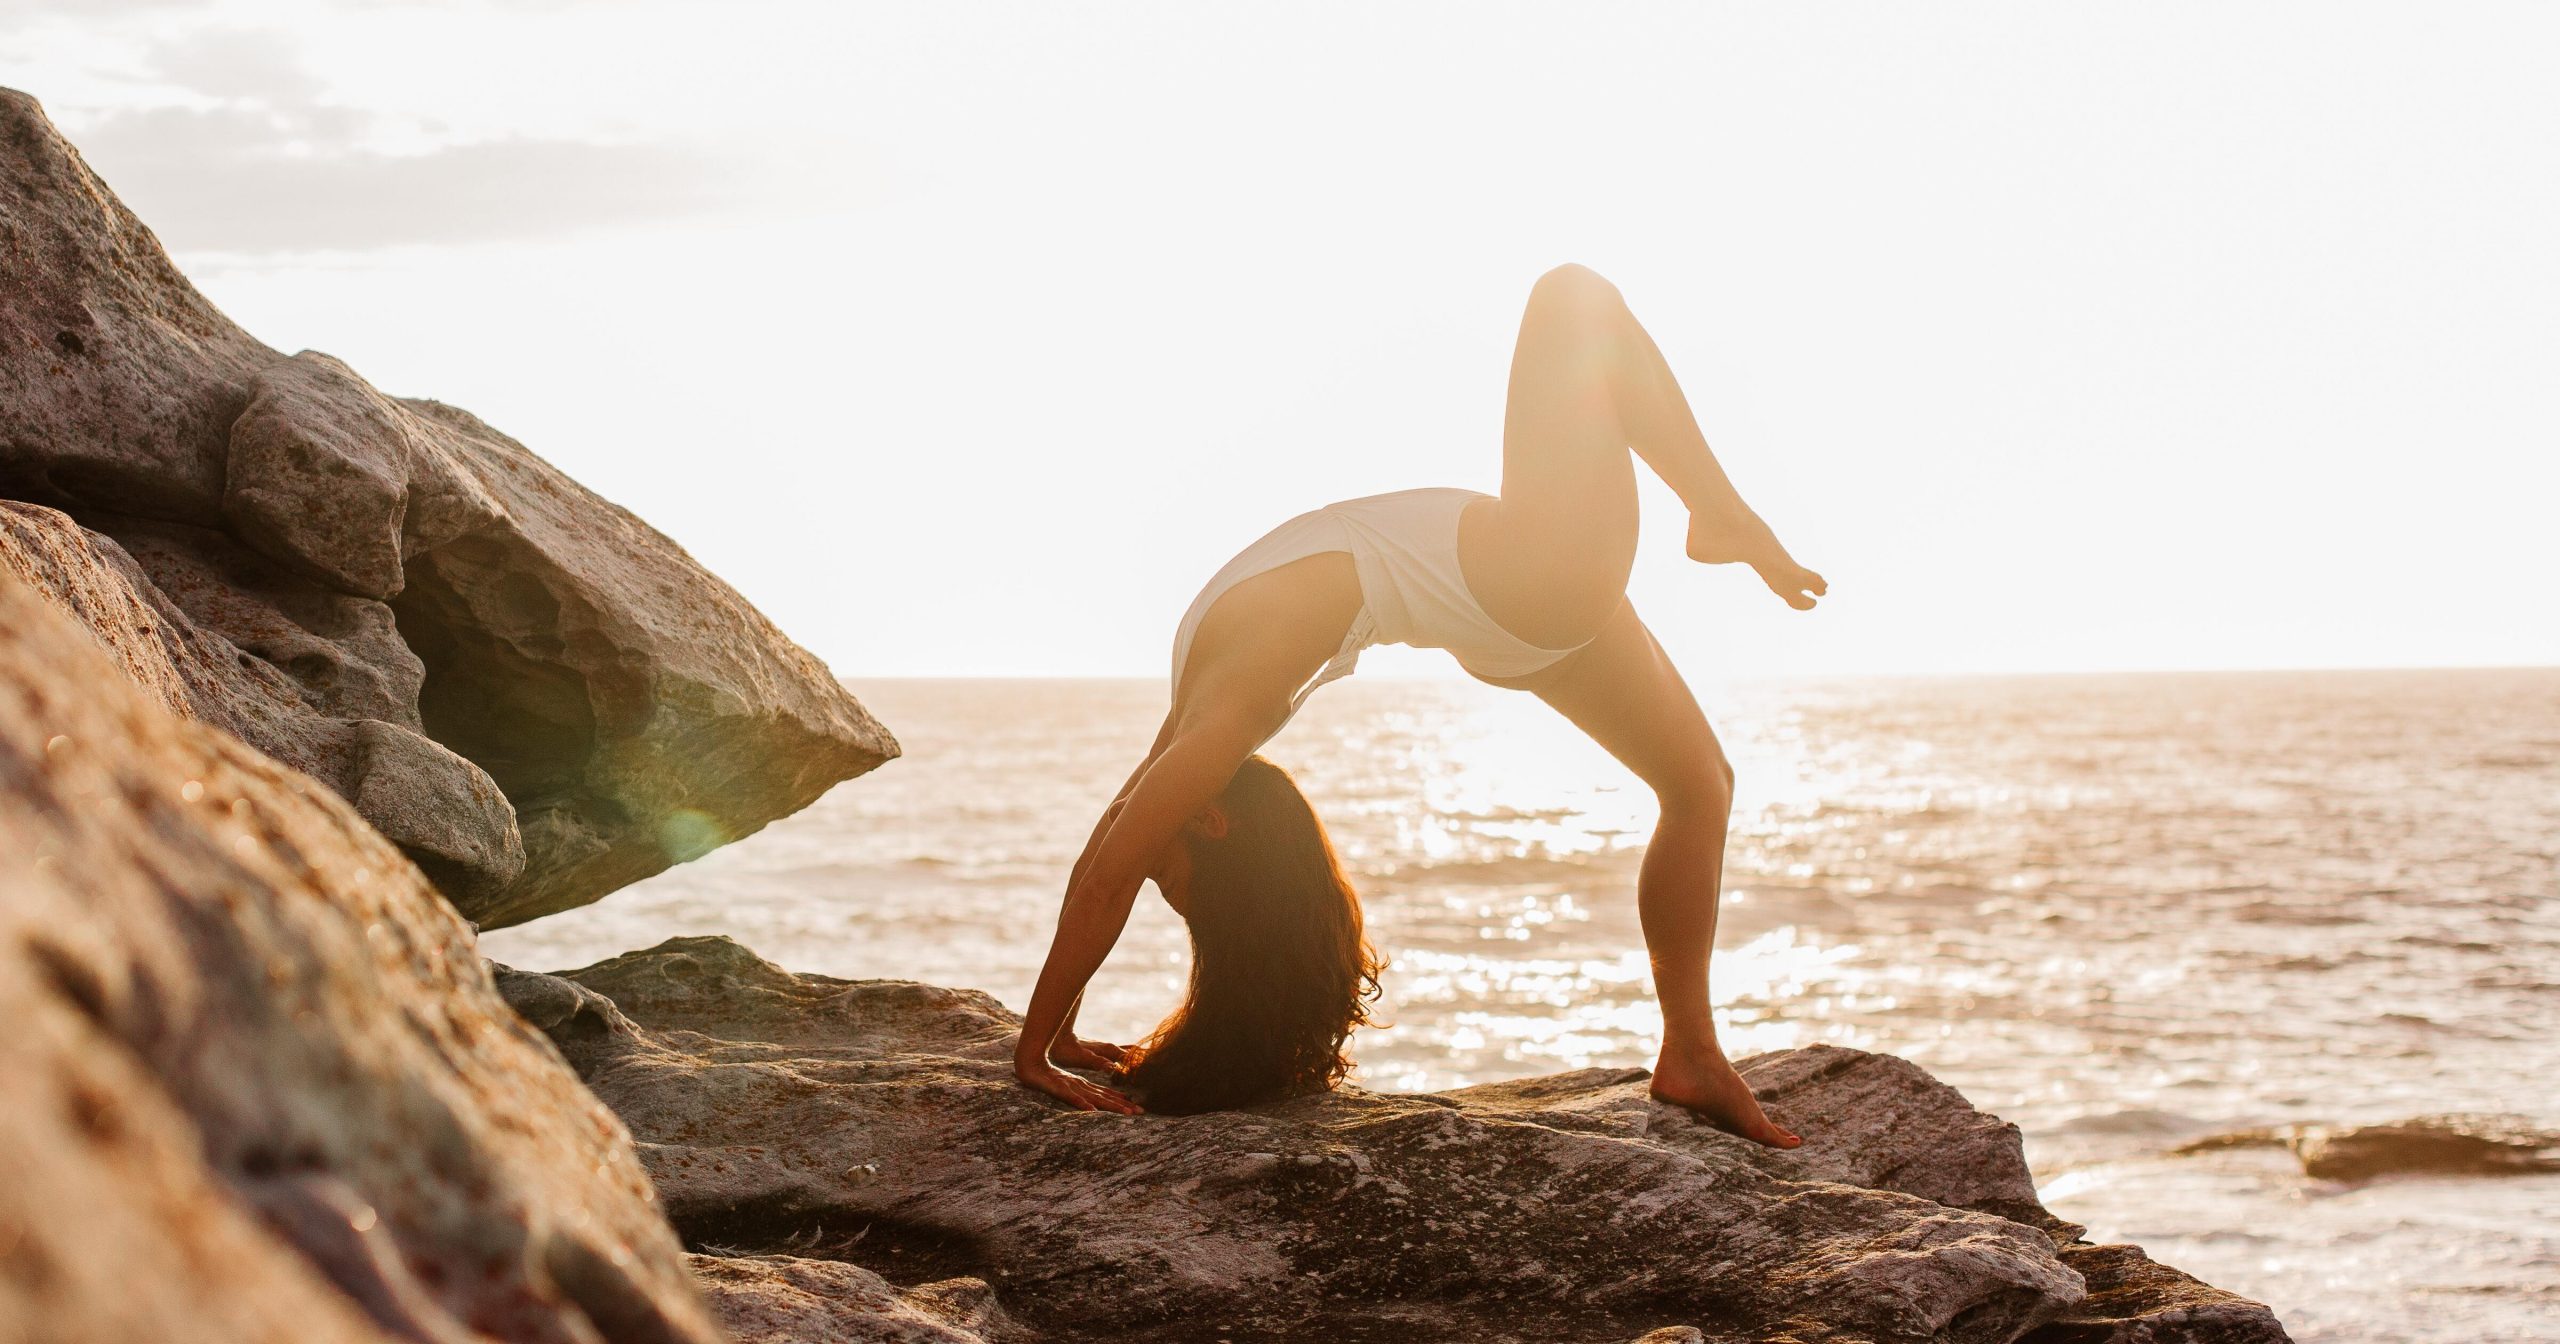 Turismo e yoga: ripartenza all’insegna del benessere